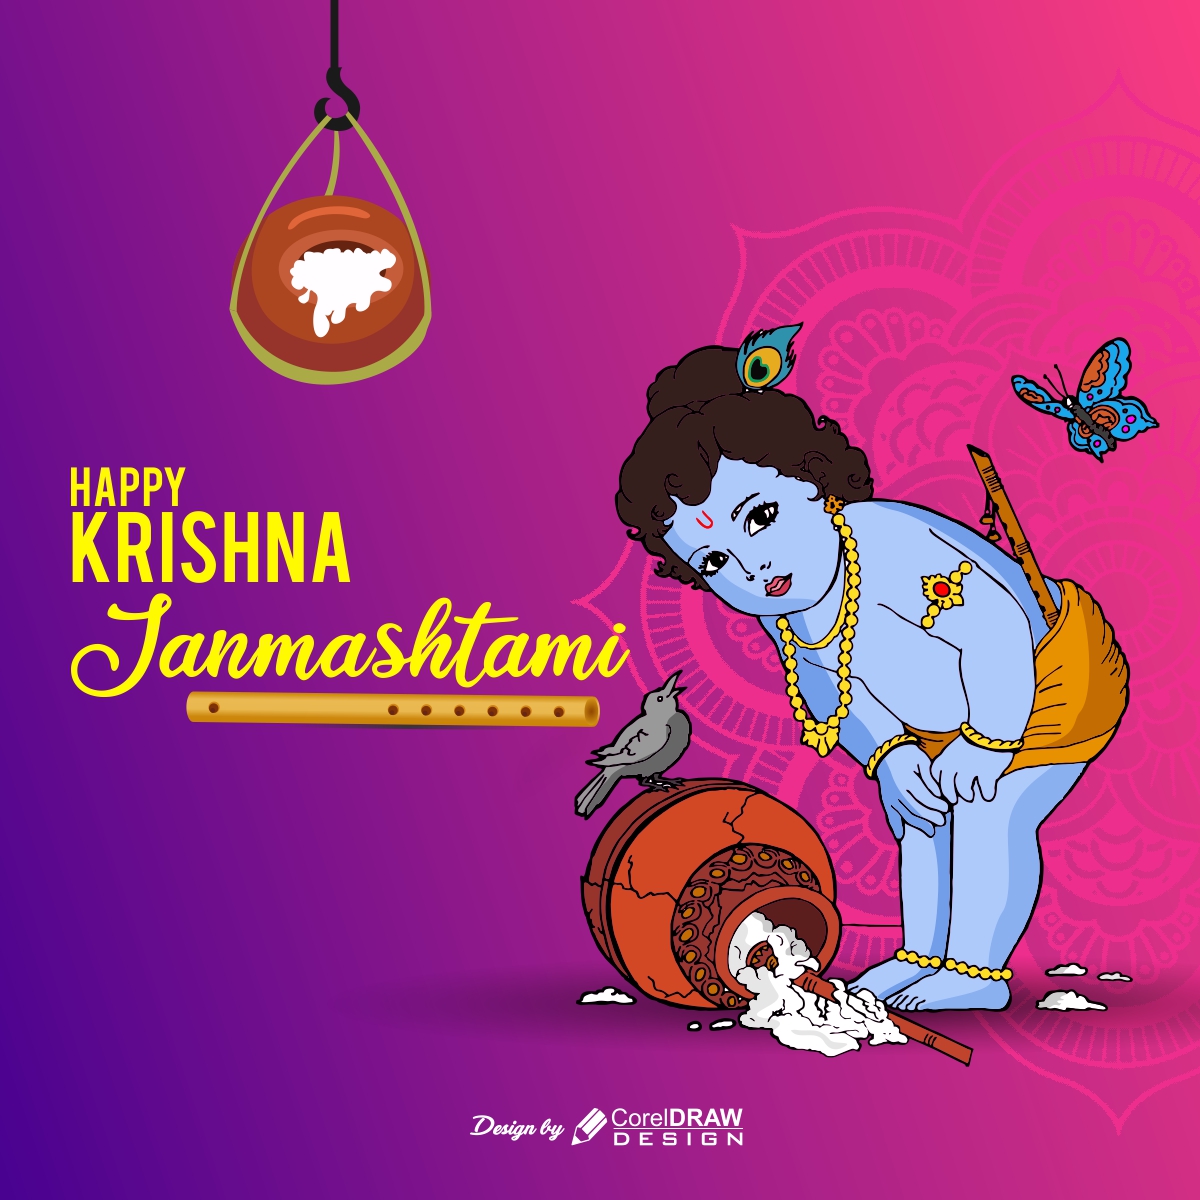 Krishna Janmashatami Festival Banner